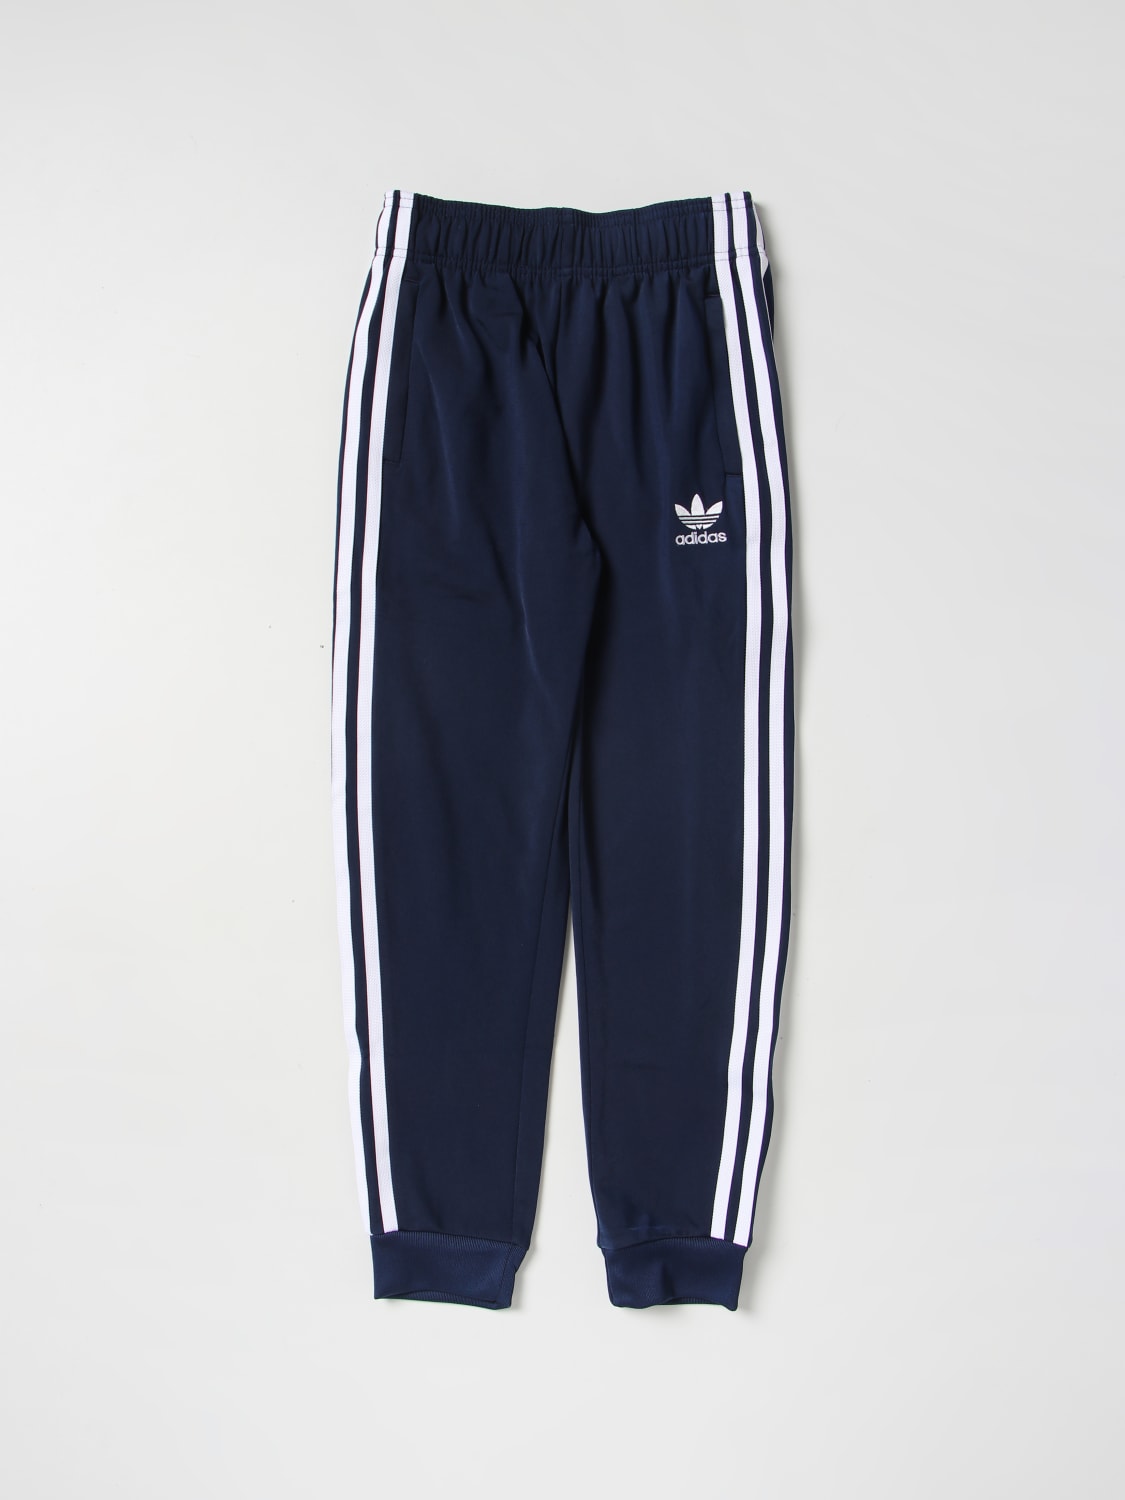 ADIDAS ORIGINALS: pants boys - Blue | Adidas Originals pants HK0323 online at